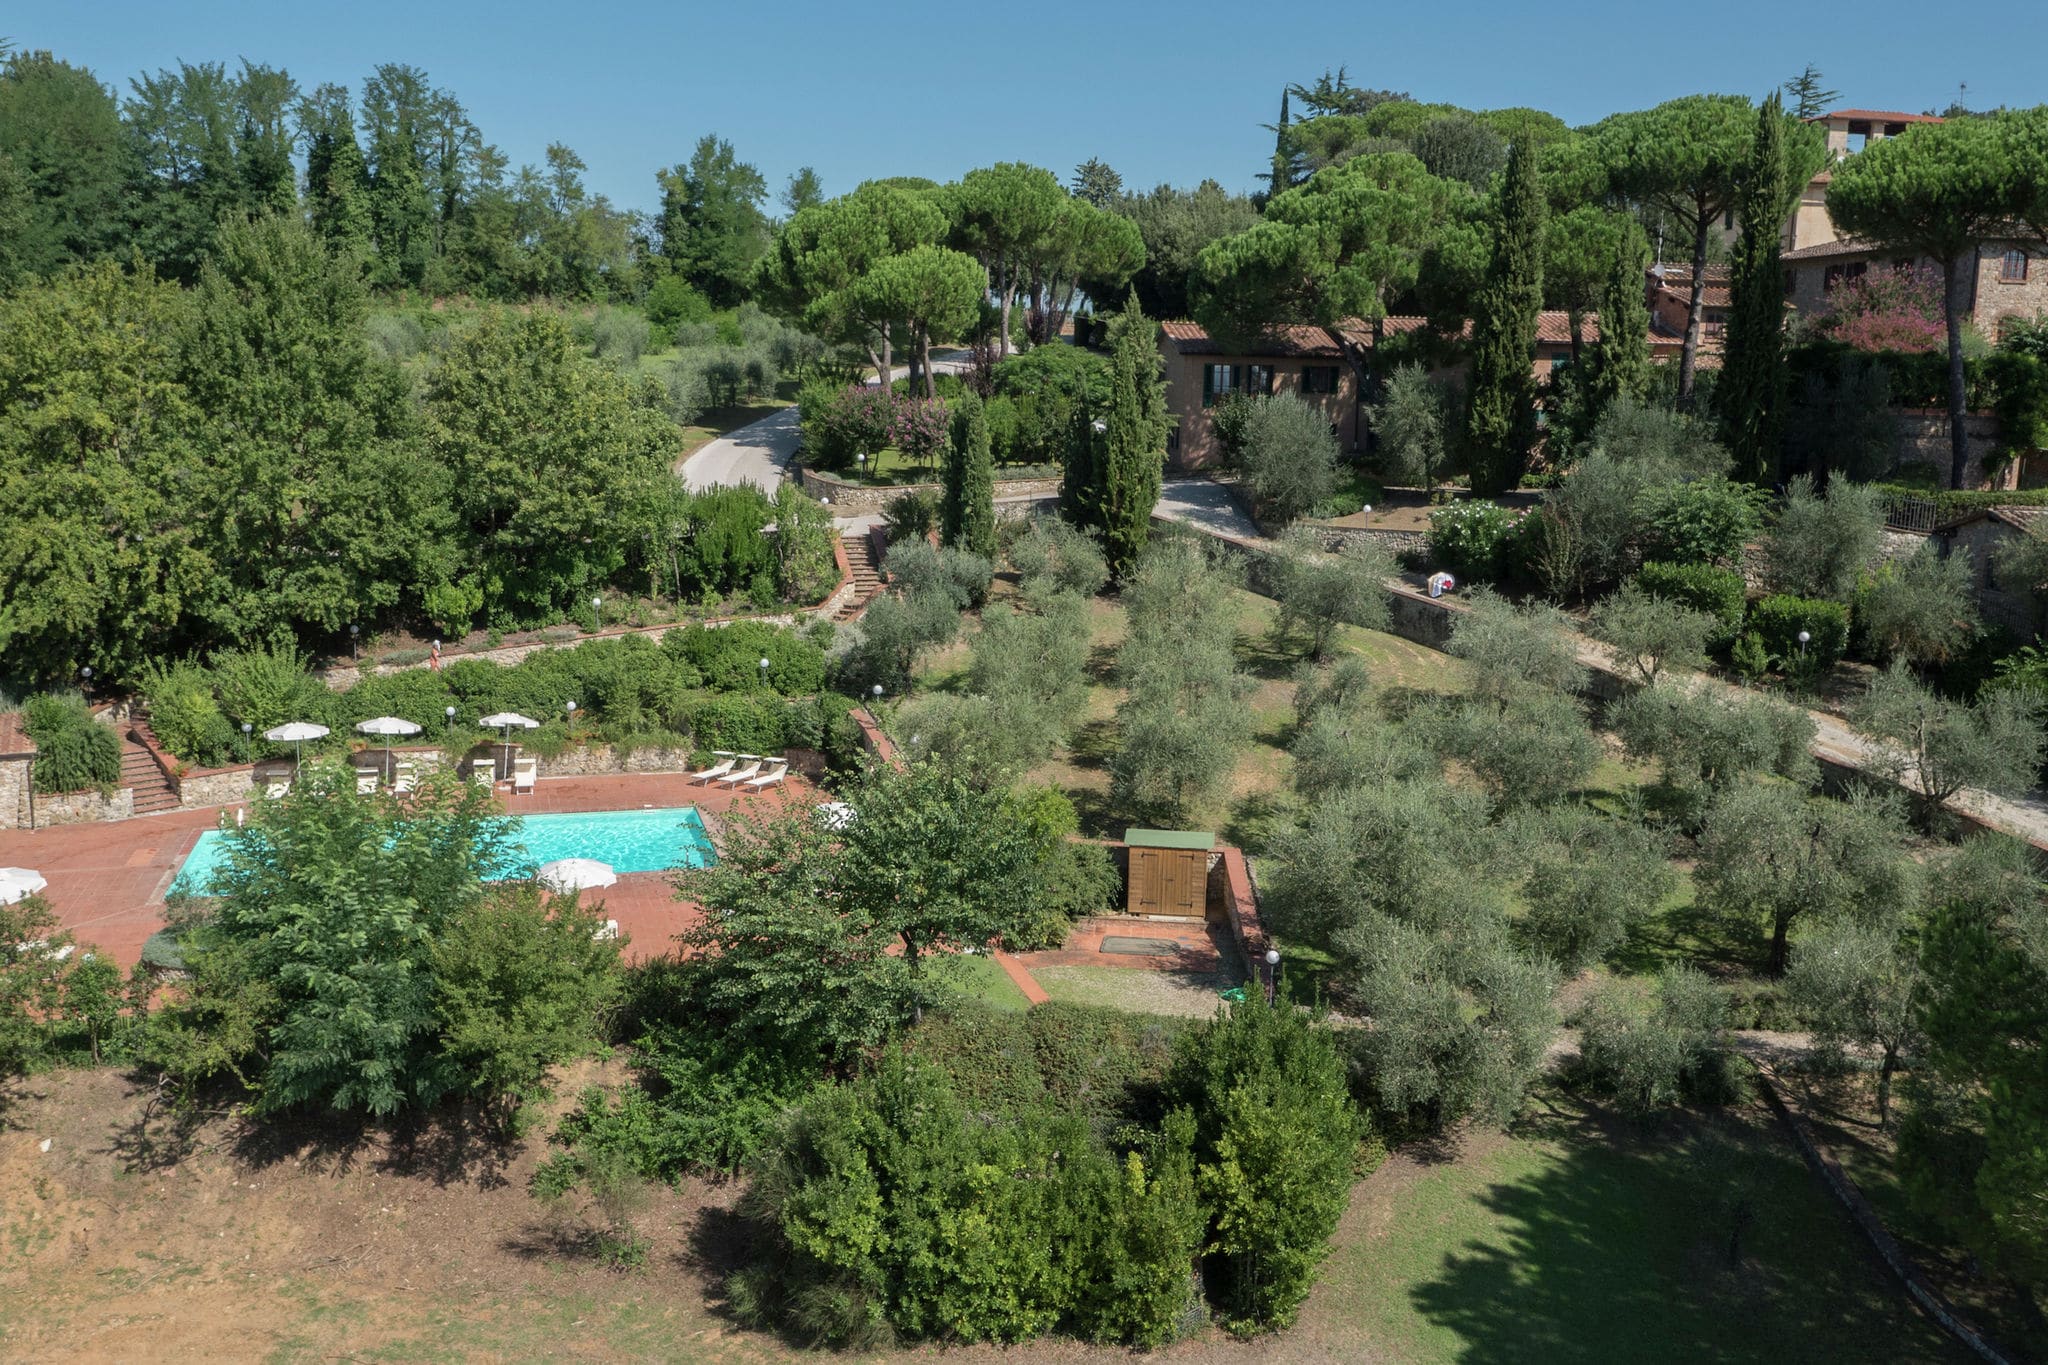 Maison de vacances confortable avec piscine à Sienne, Italie